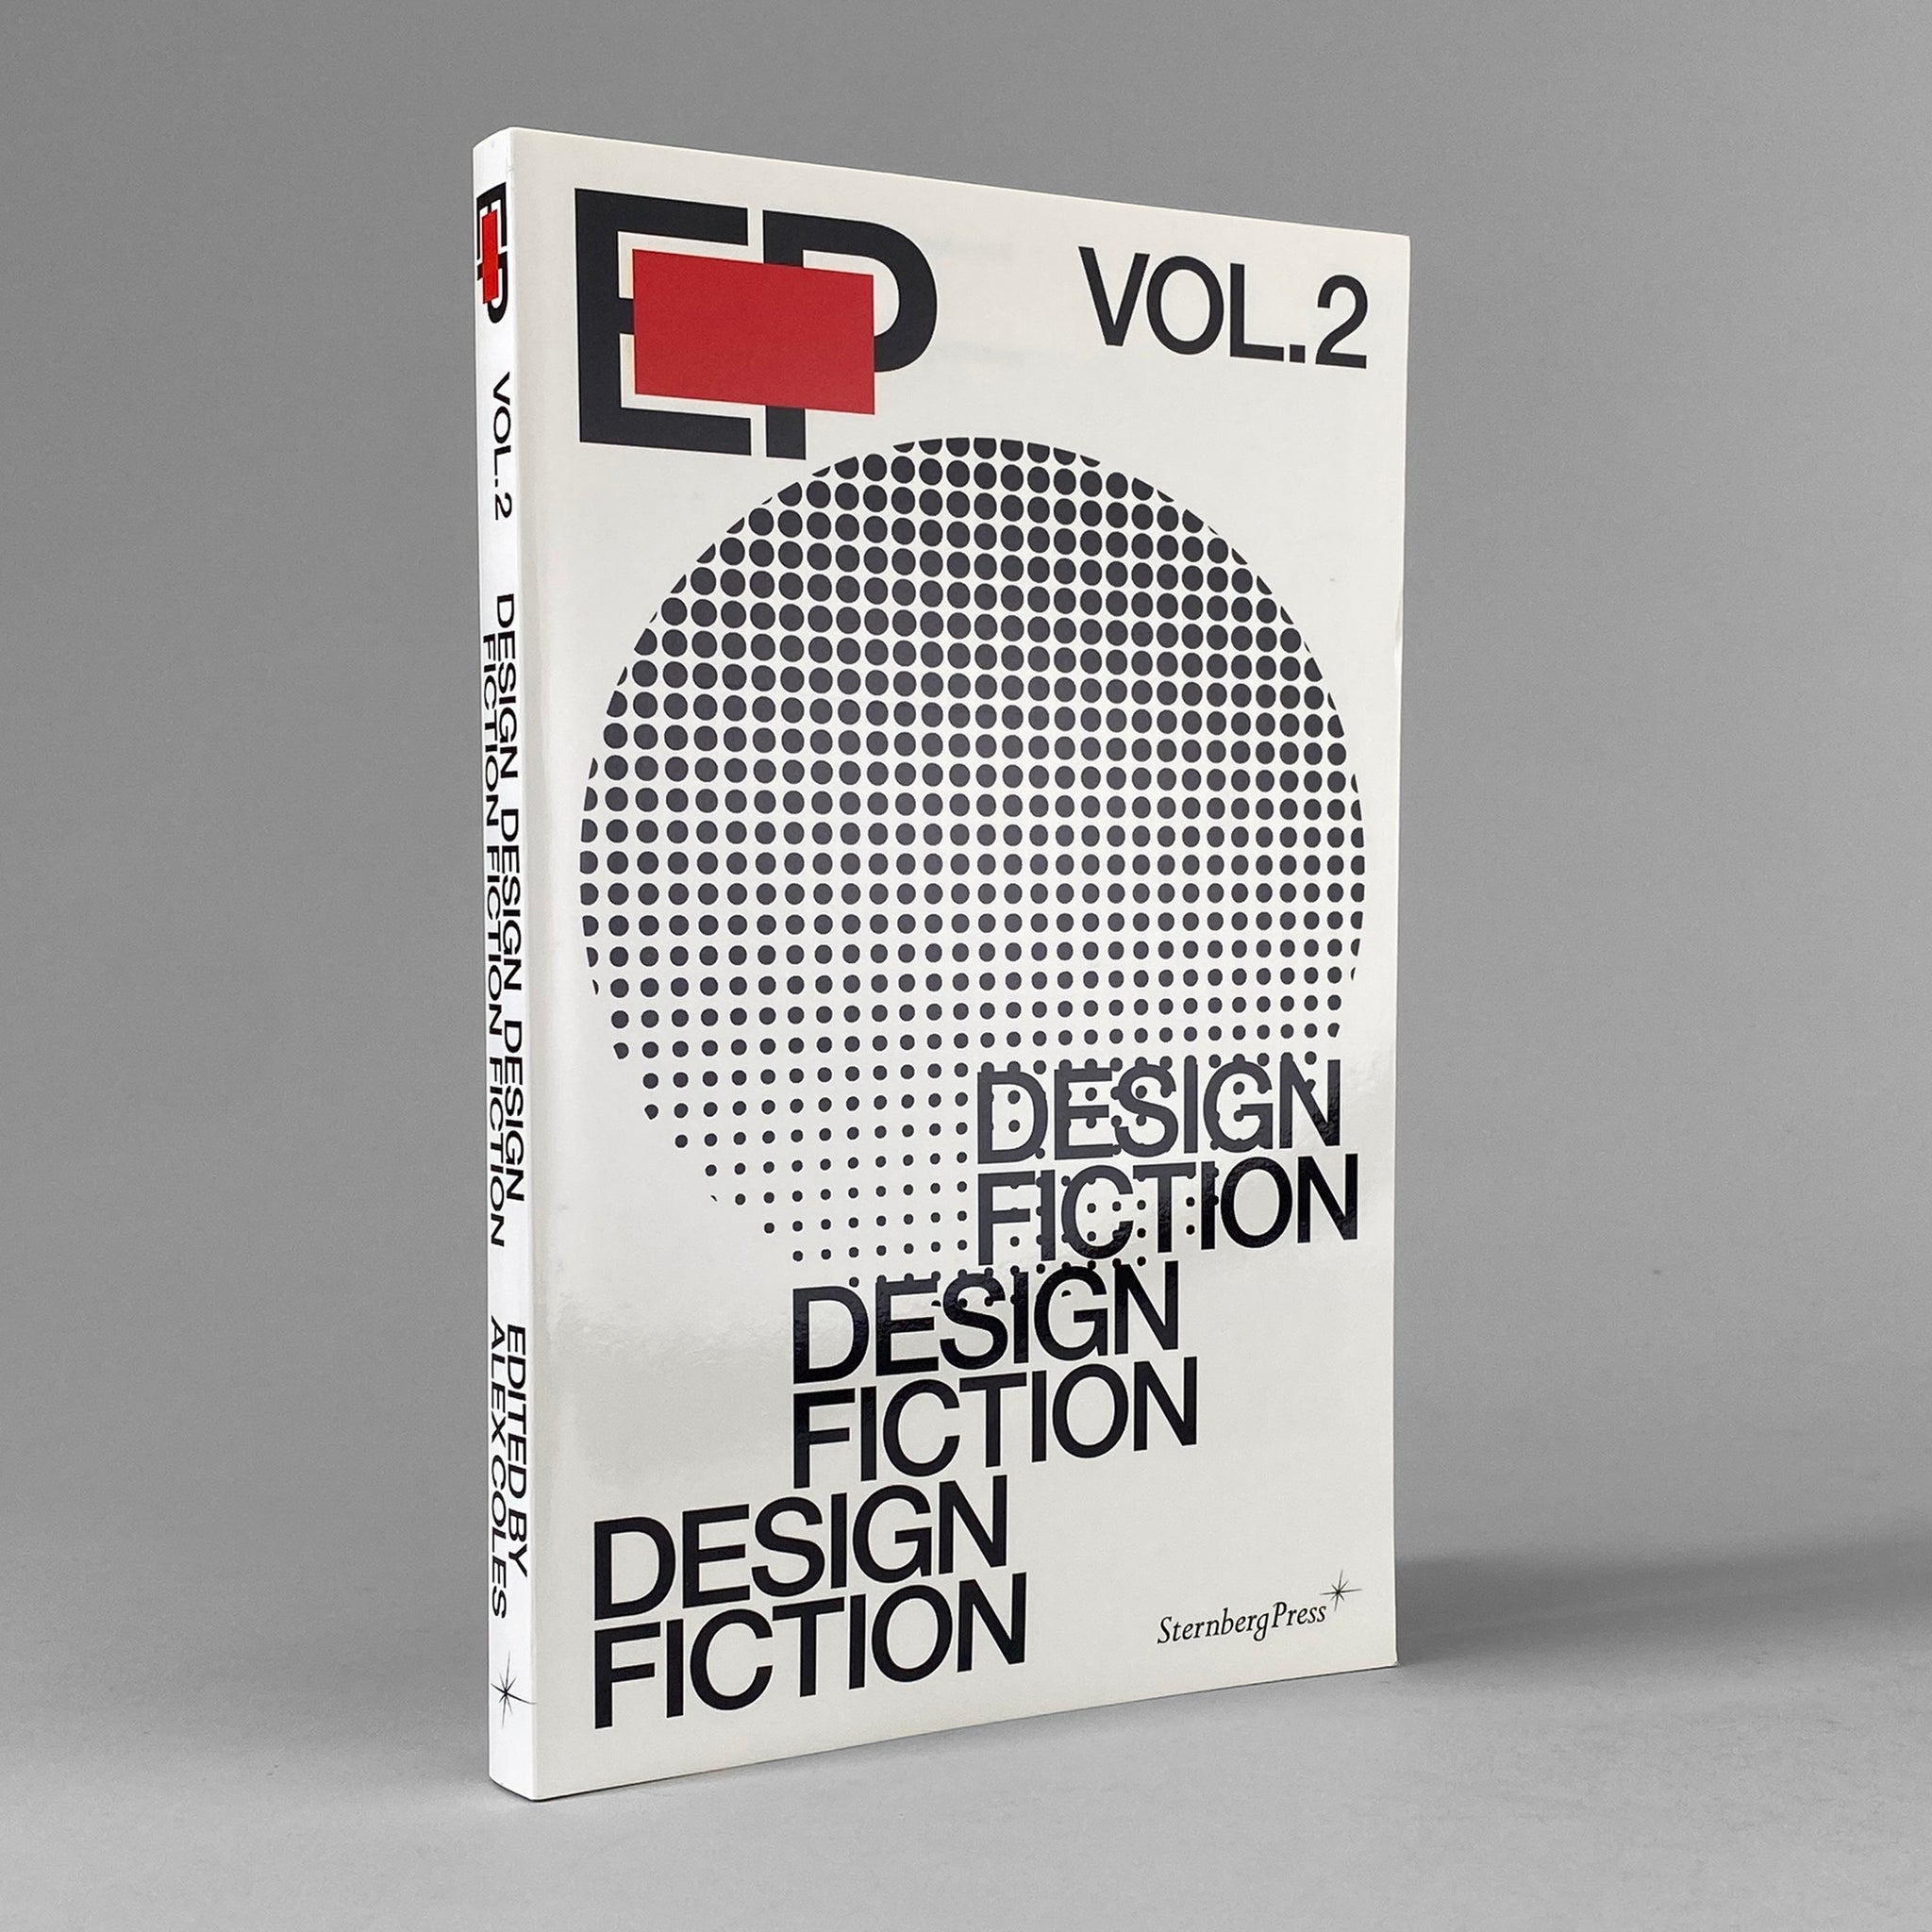 EP Vol. 2 / Design Fiction